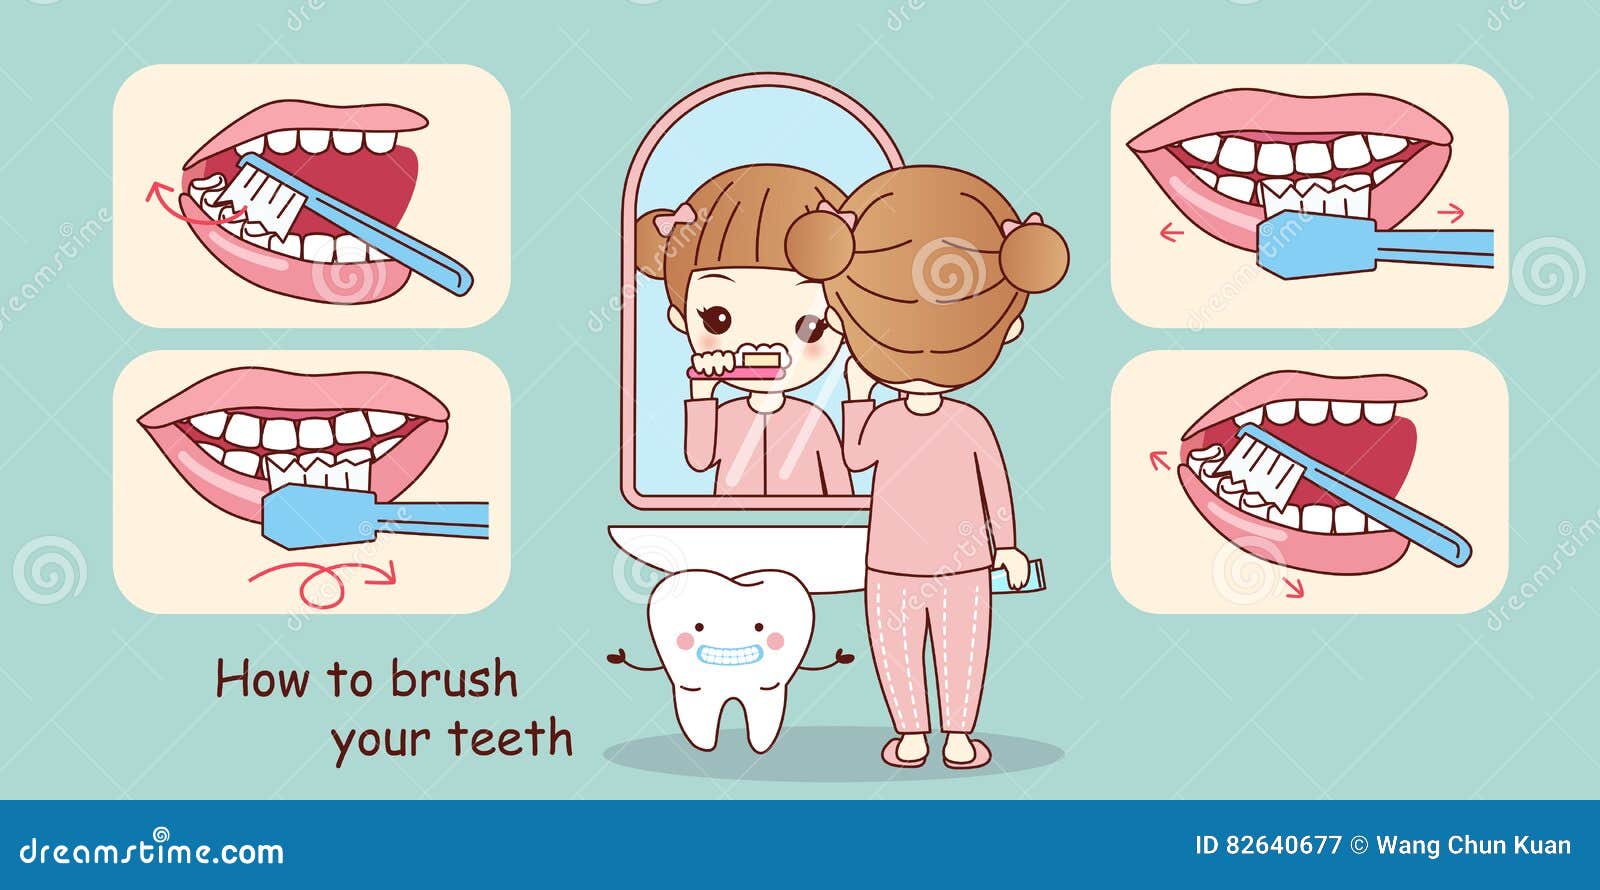 Do your teeth. Правильность чистки зубов. Схема правильной чистки зубов. Схема чистки зубов для детей. Как чистить зубы.